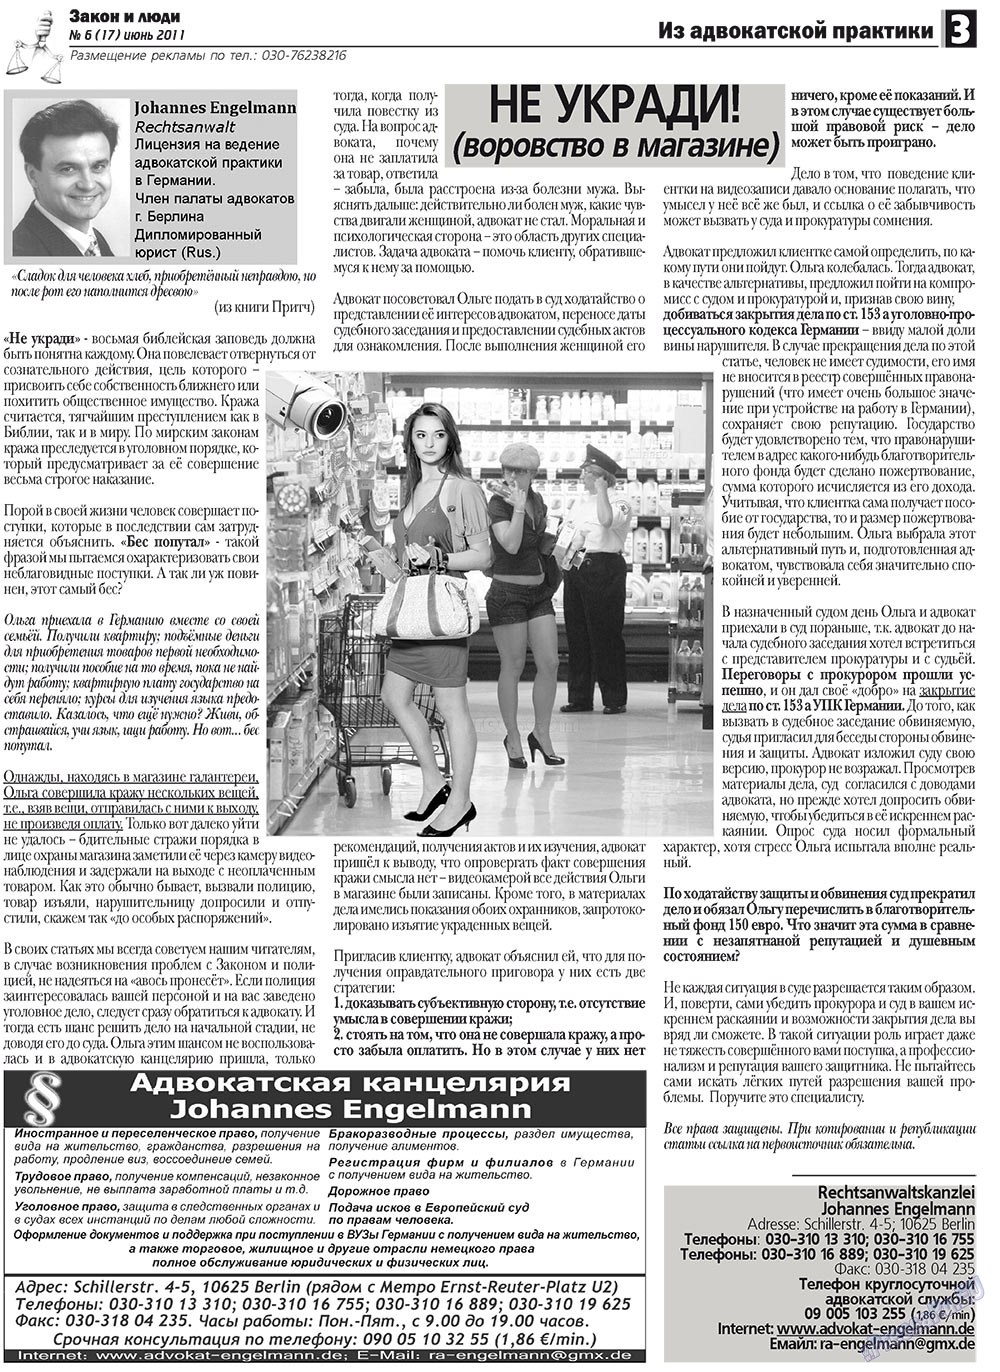 Закон и люди, газета. 2011 №6 стр.3